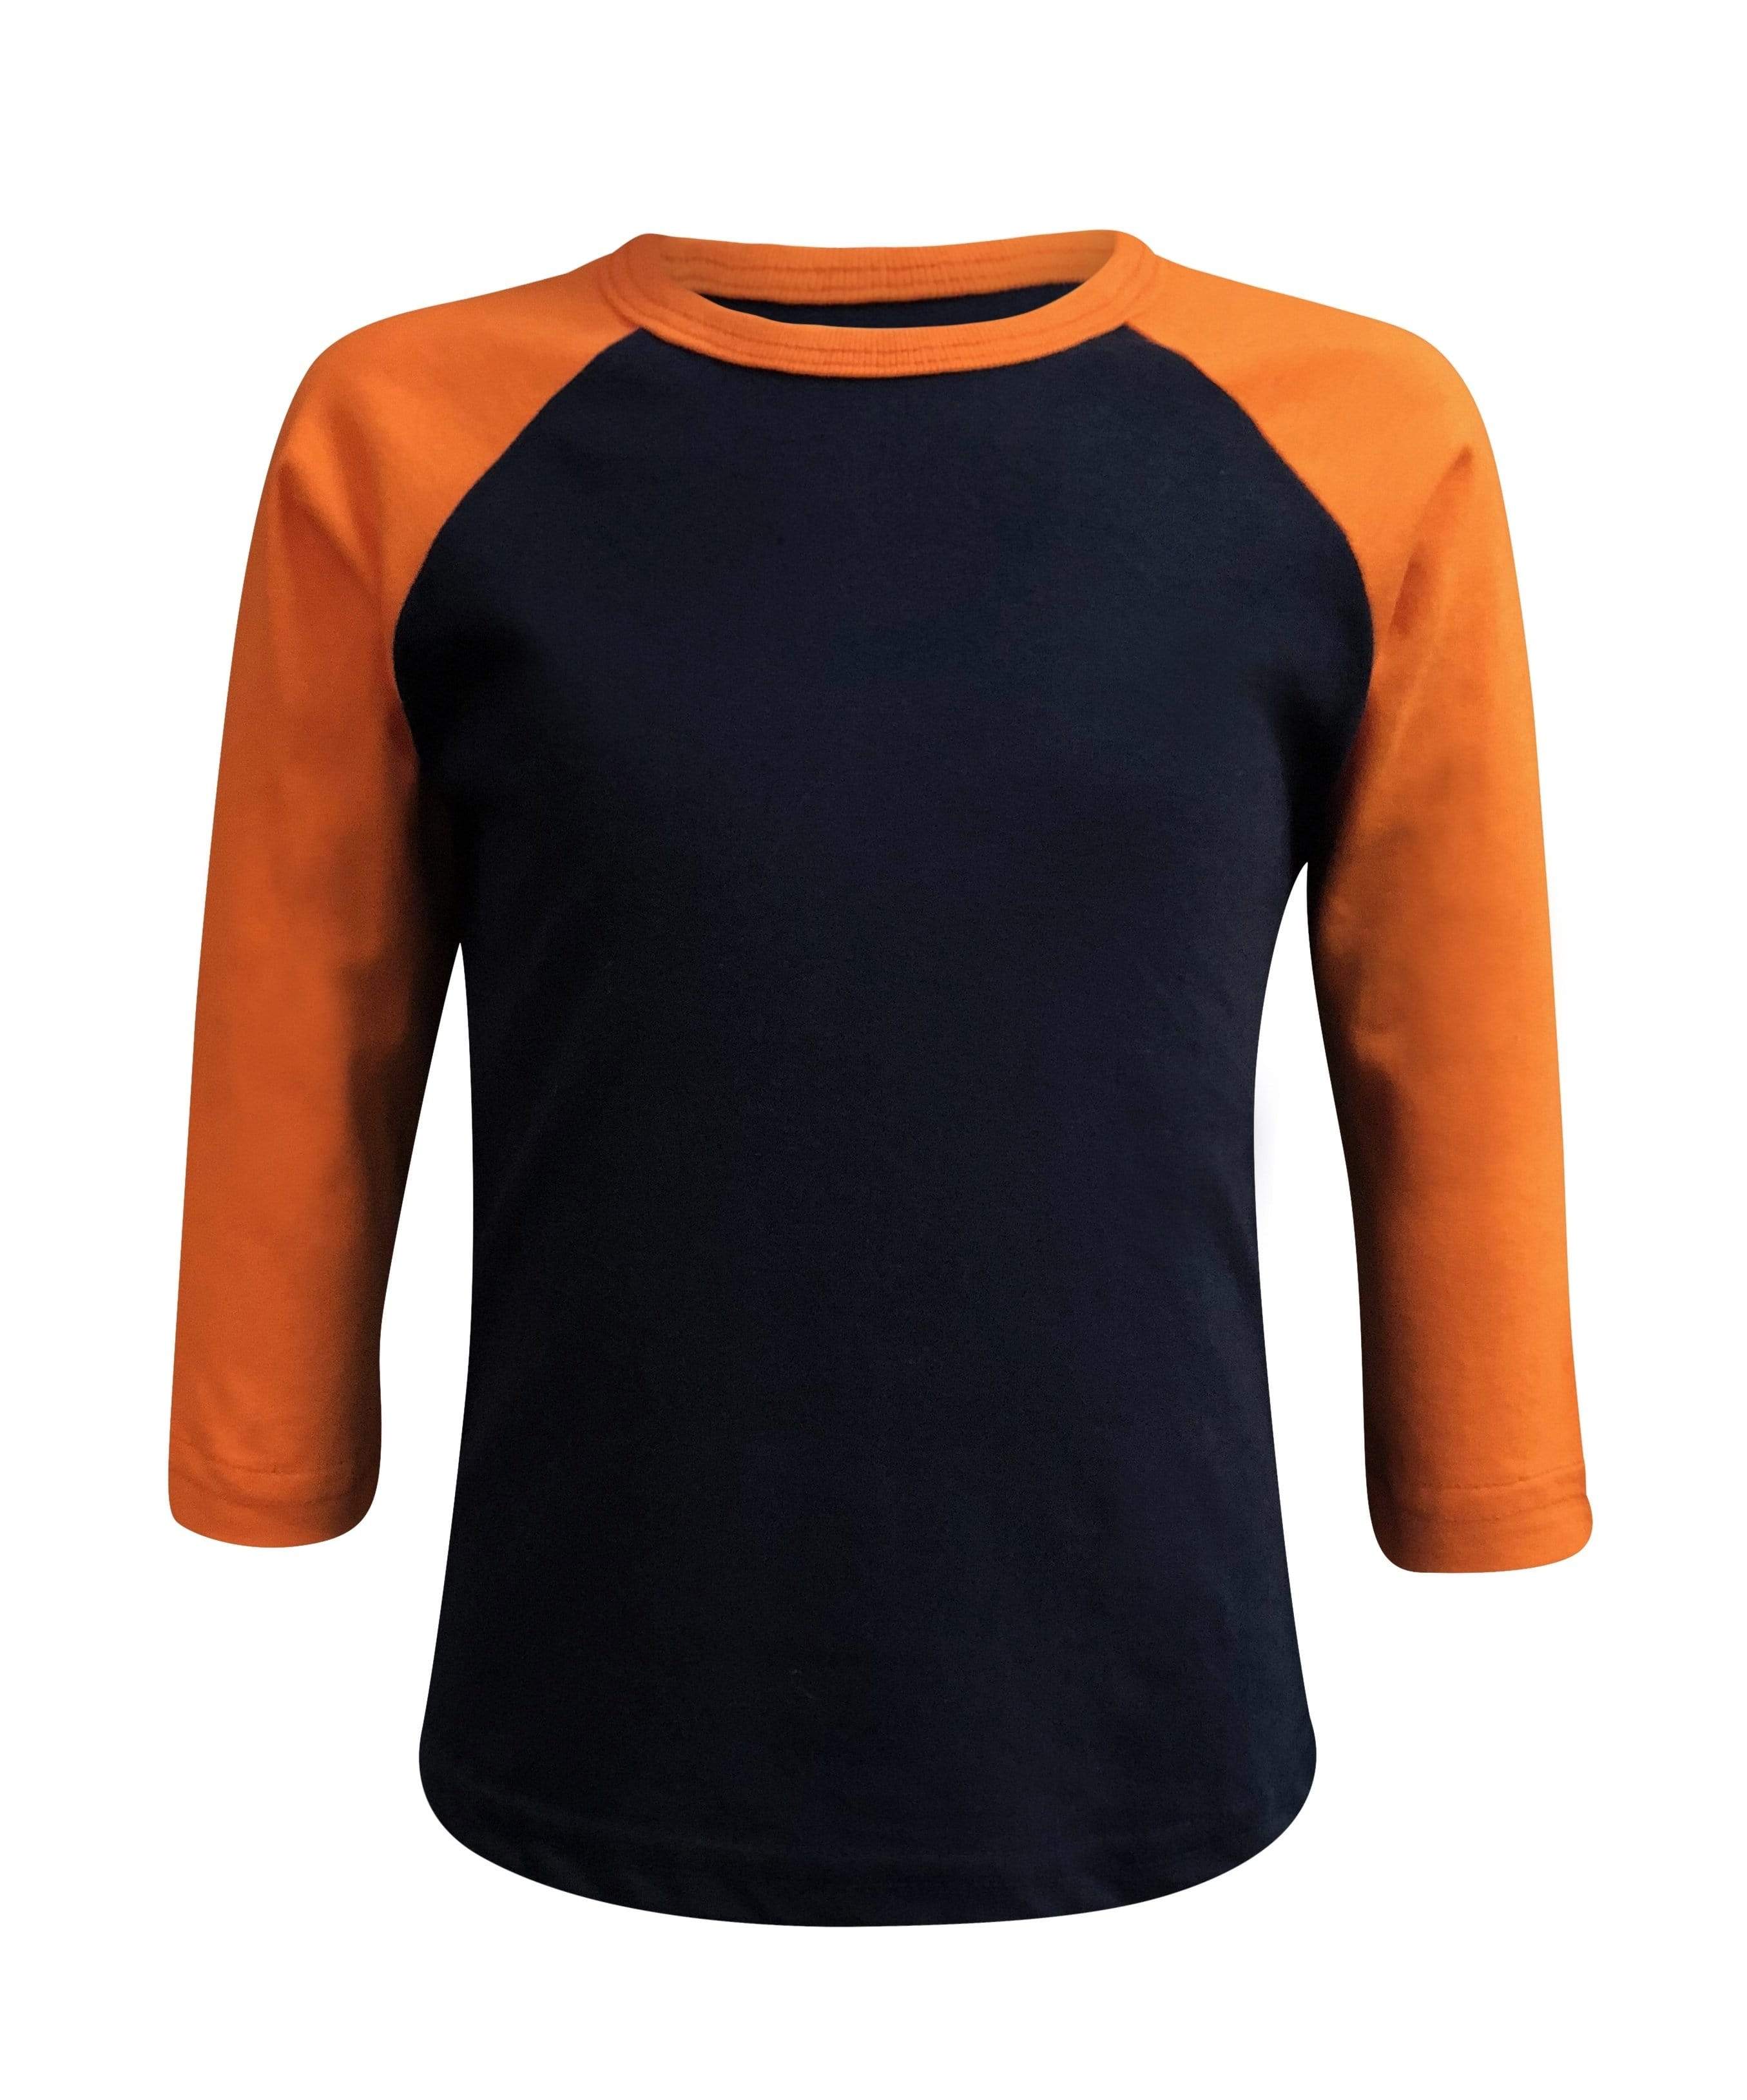 orange raglan shirt